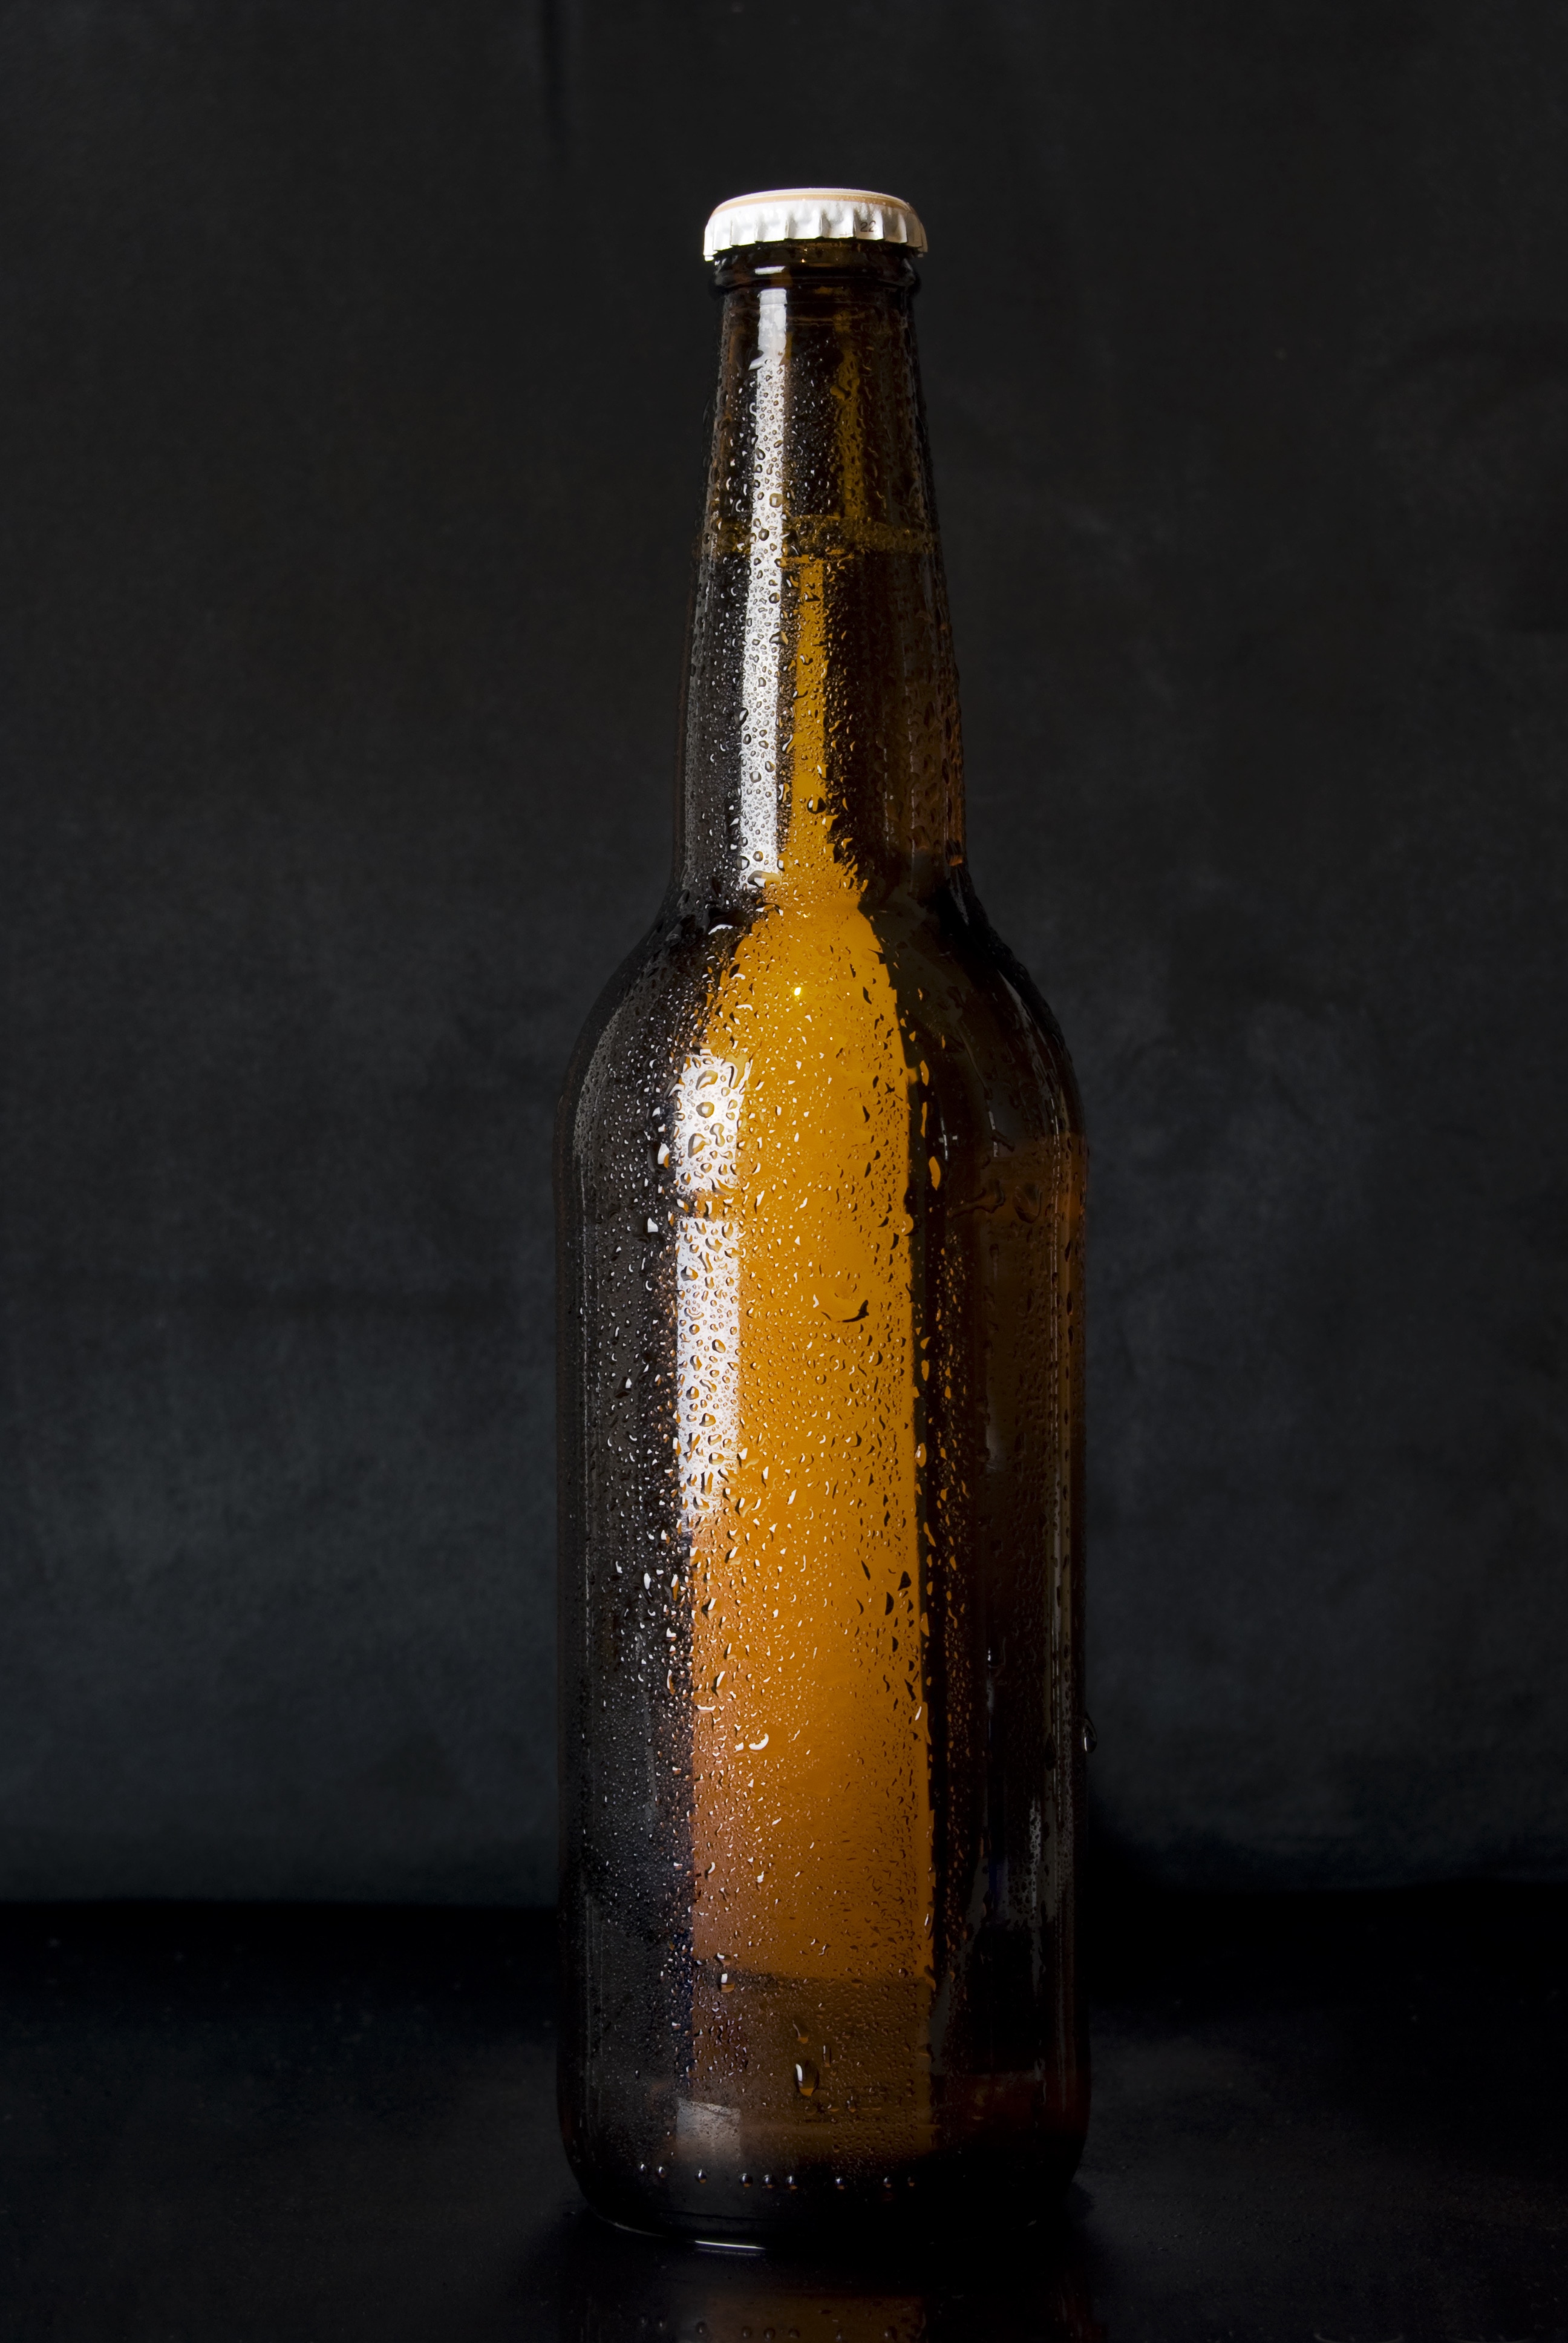 fond d'écran de bouteille de bière,bouteille,bouteille en verre,bouteille de bière,boisson,produit